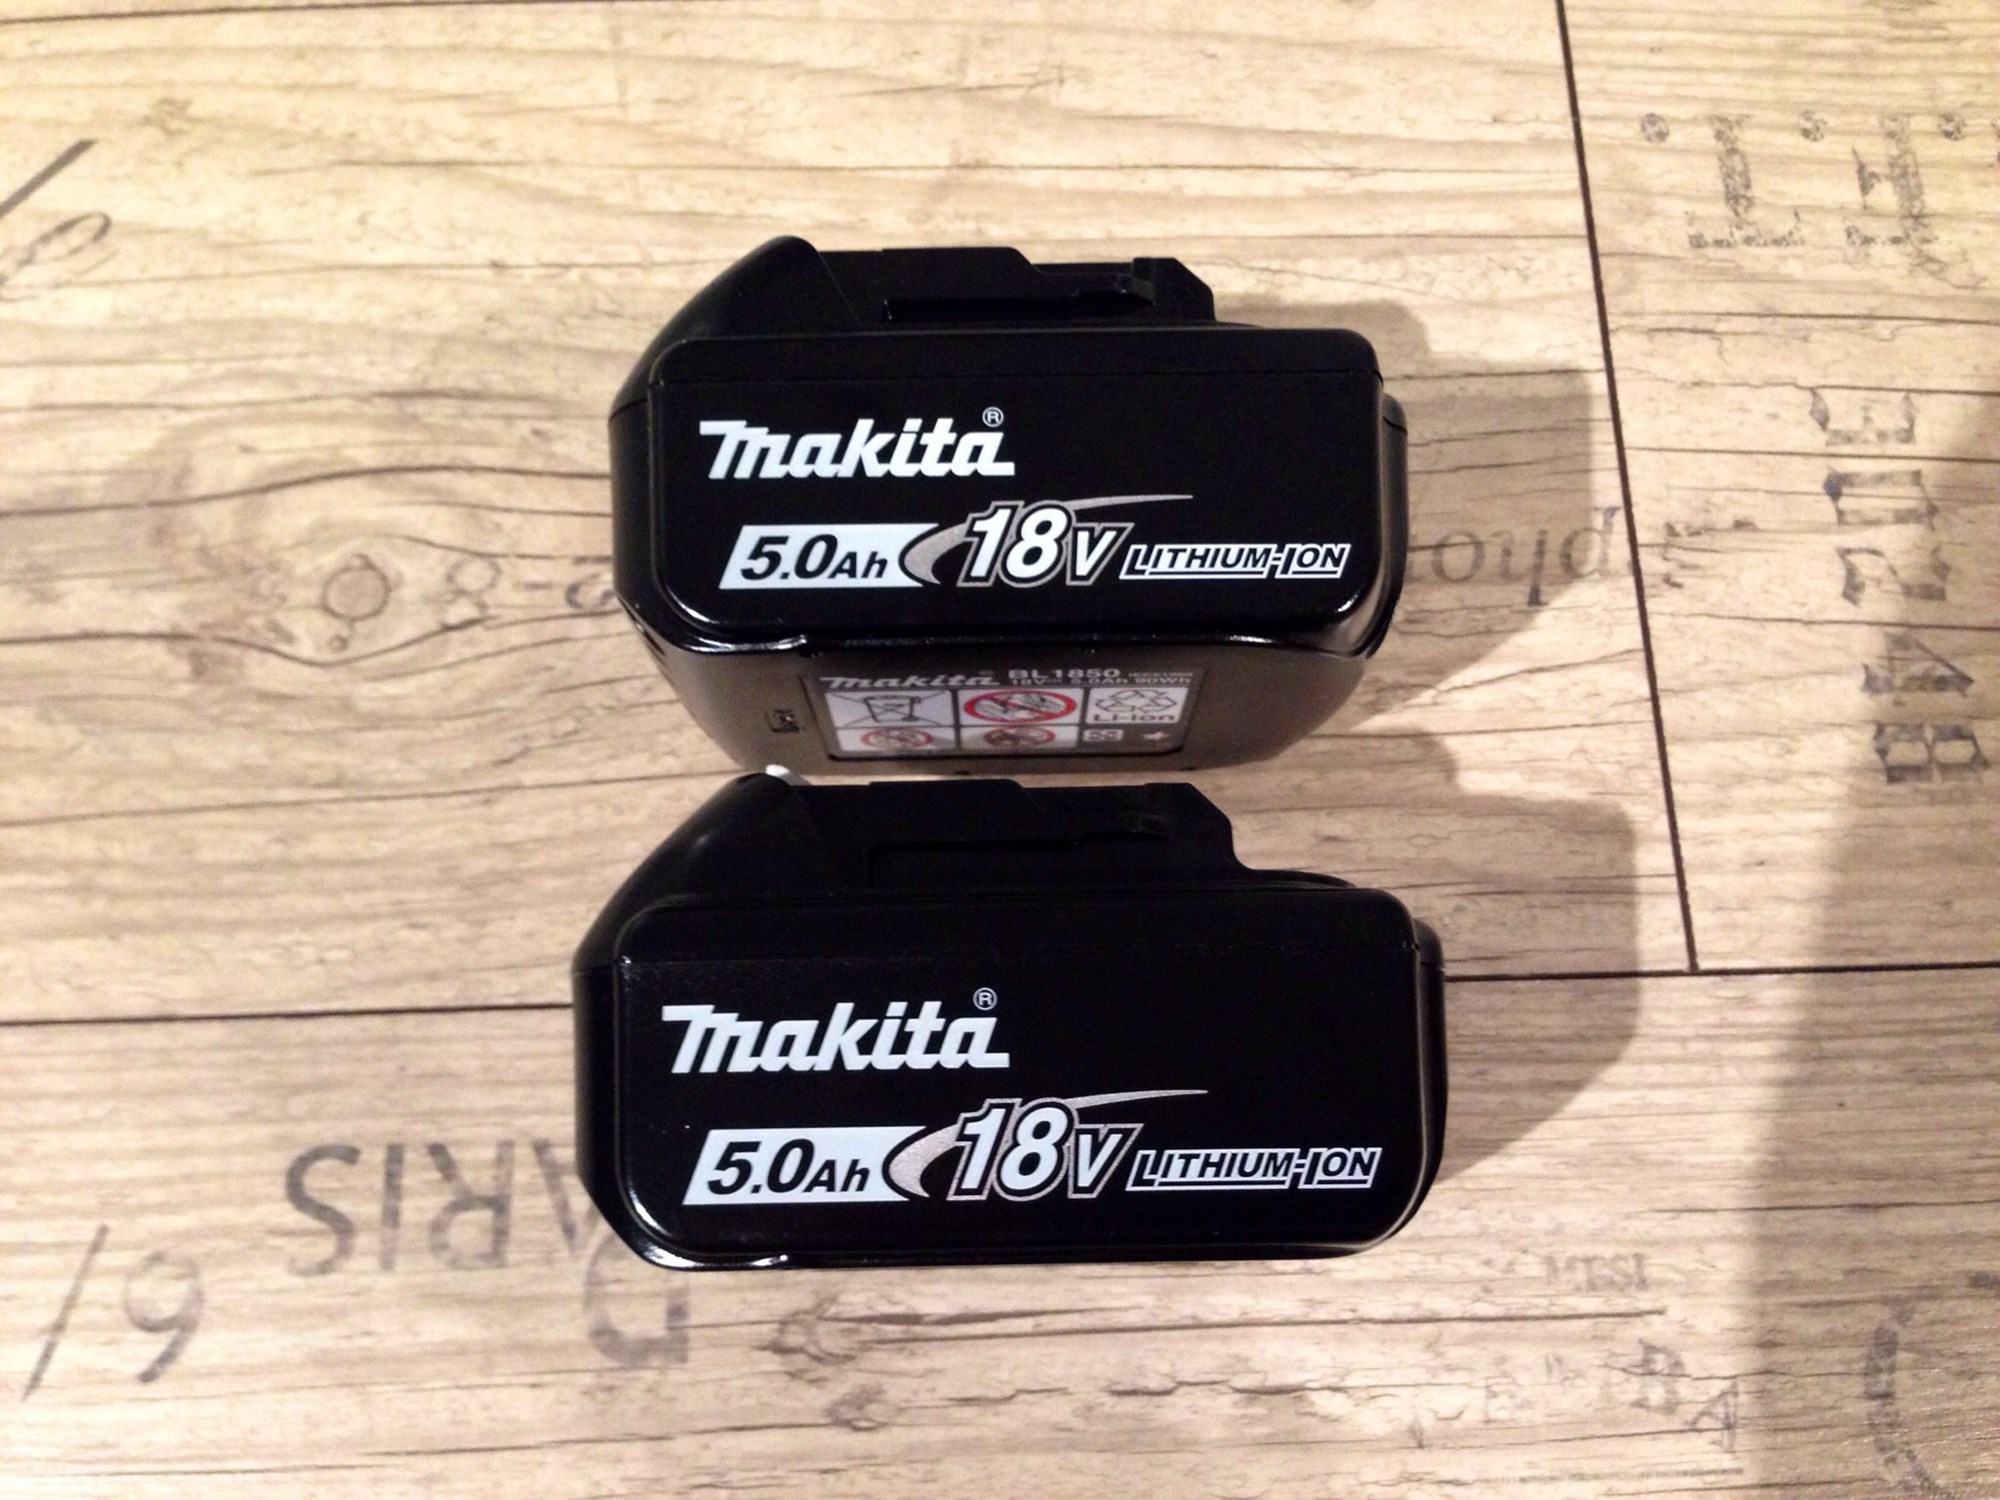 Makita 36V kantklipper - image.jpg - z-edition 006